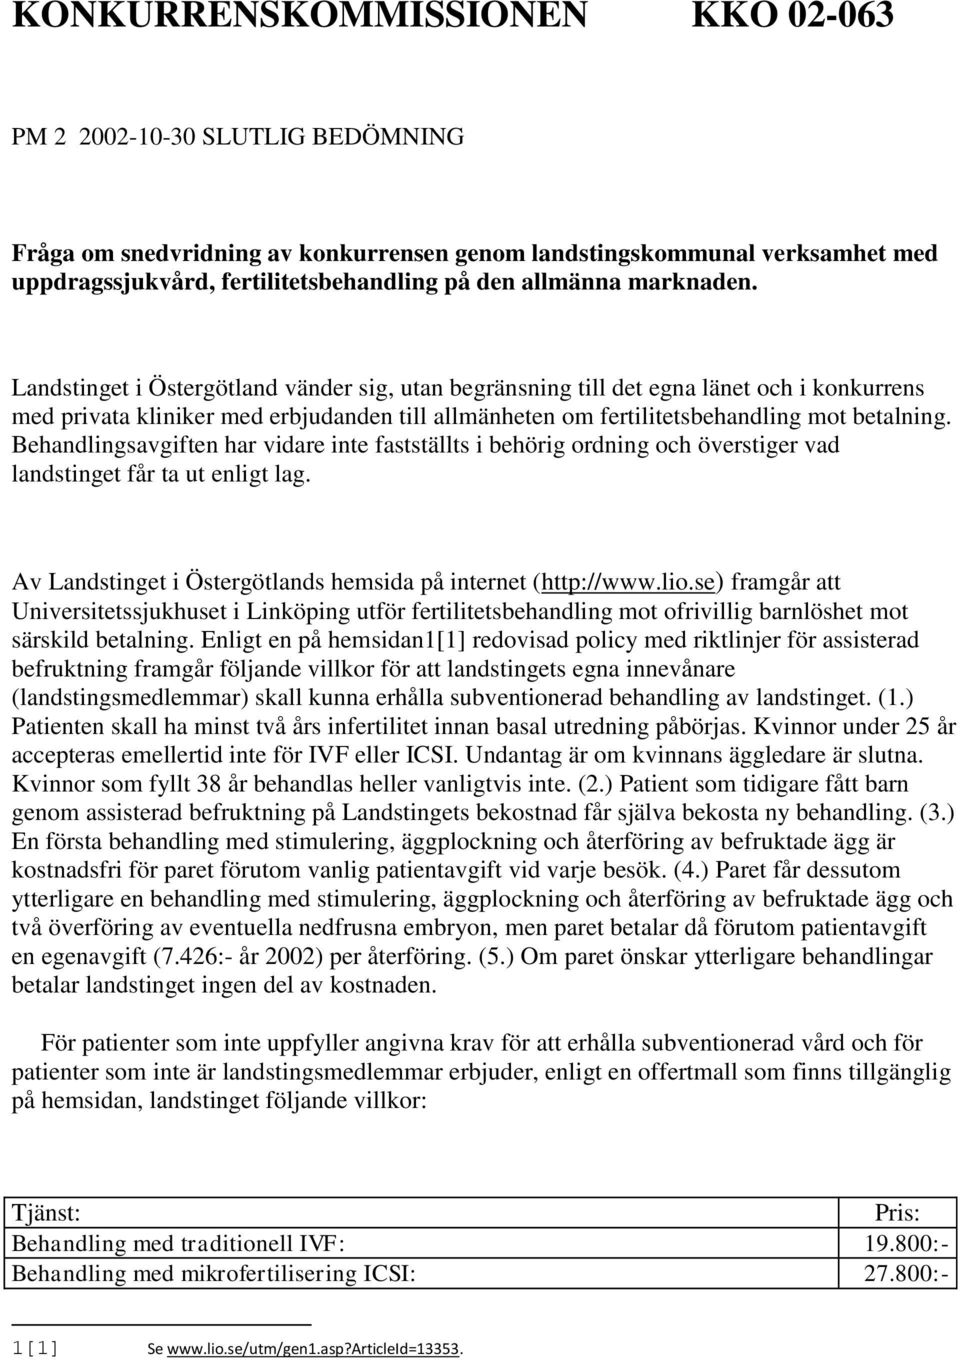 Landstinget i Östergötland vänder sig, utan begränsning till det egna länet och i konkurrens med privata kliniker med erbjudanden till allmänheten om fertilitetsbehandling mot betalning.